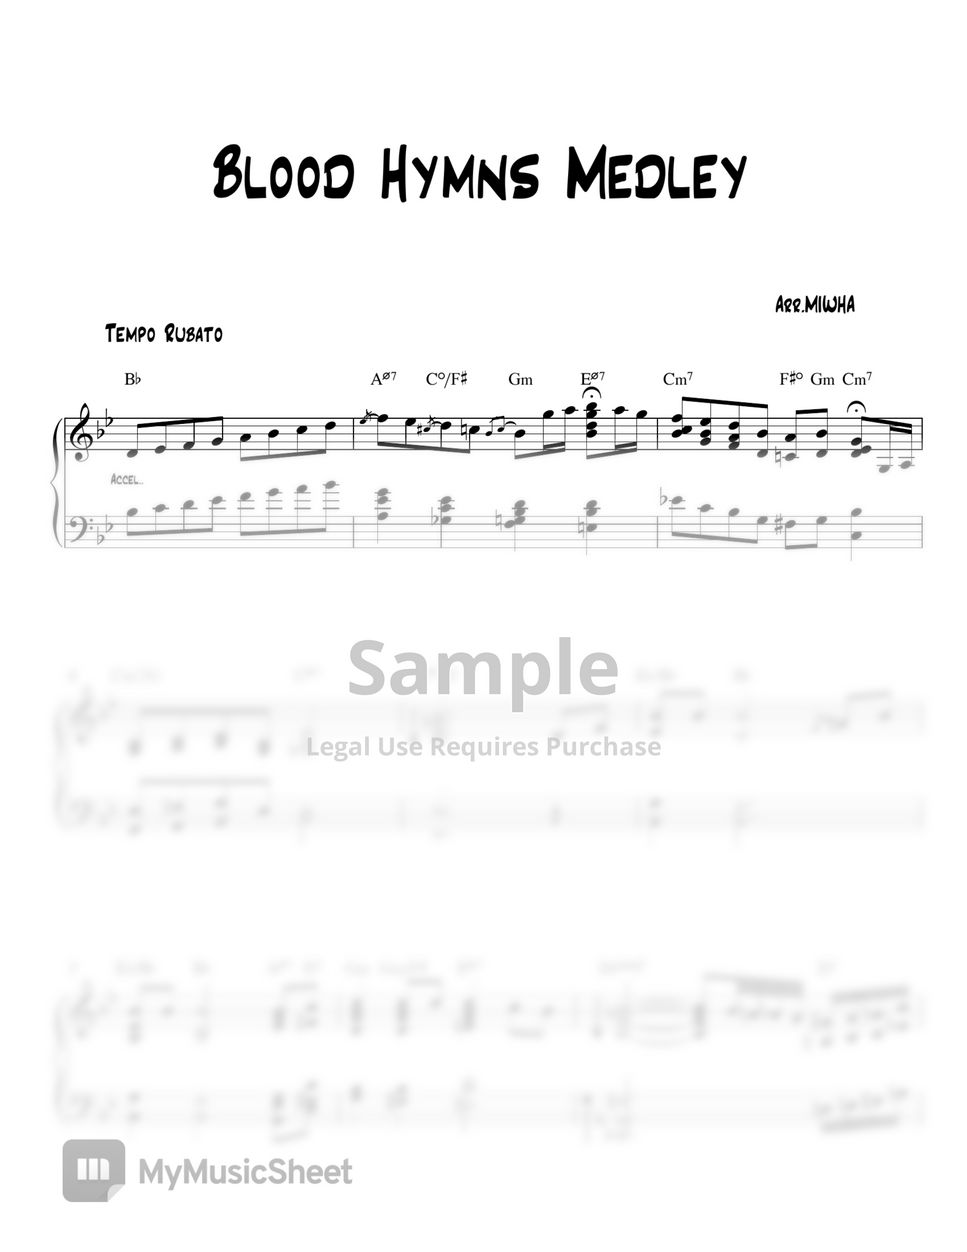 Hymn - Blood Hymns Medley (Gospel Jazz) by MIWHA